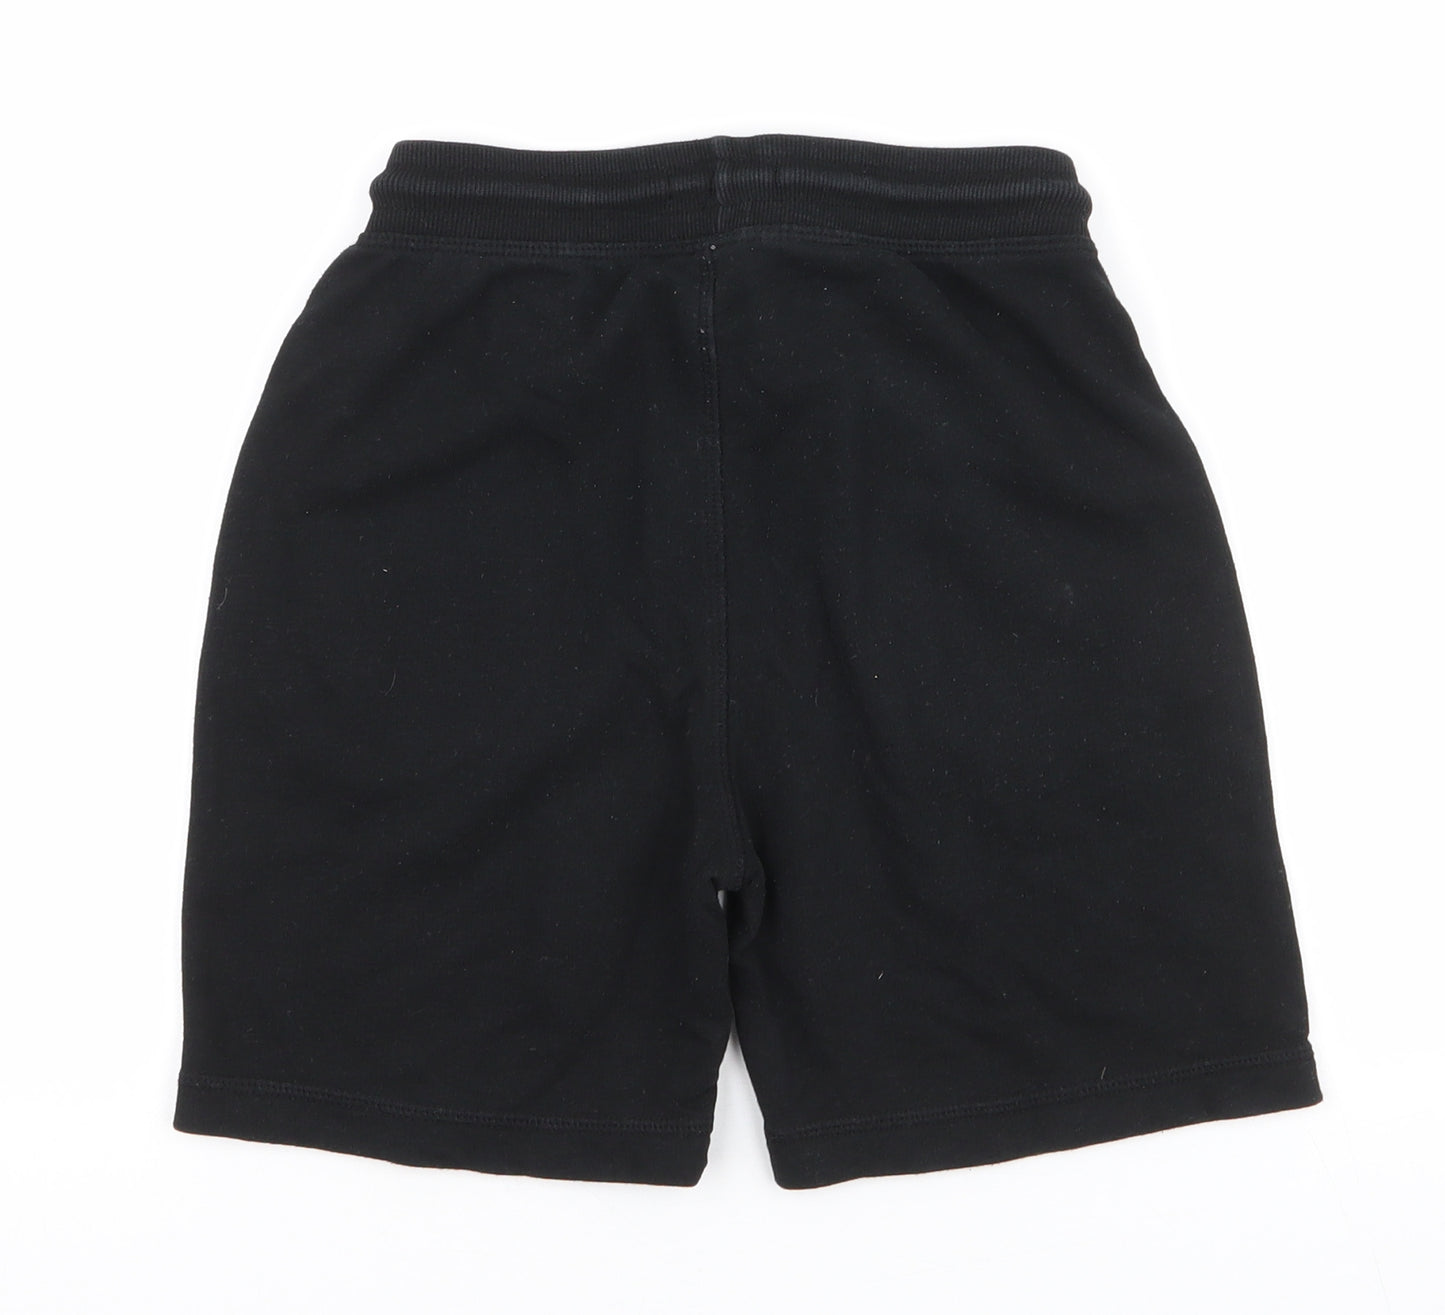 Matalan Boys Black  Cotton Sweat Shorts Size 9 Years  Regular Drawstring